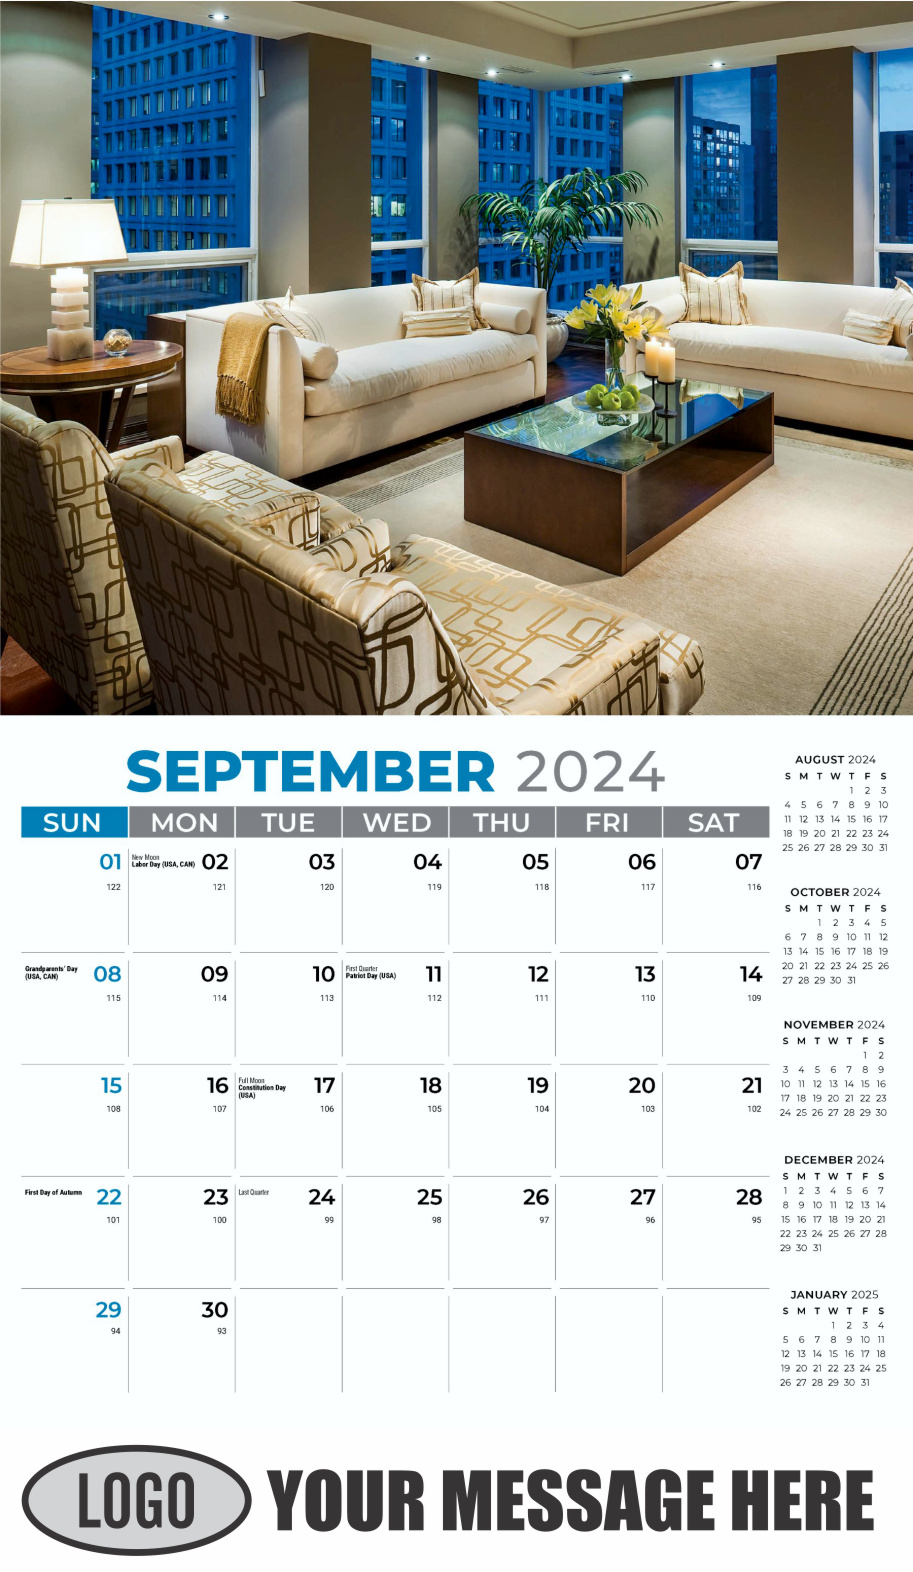 Decor and Design 2024 Interior Design Business Promotional Calendar - September